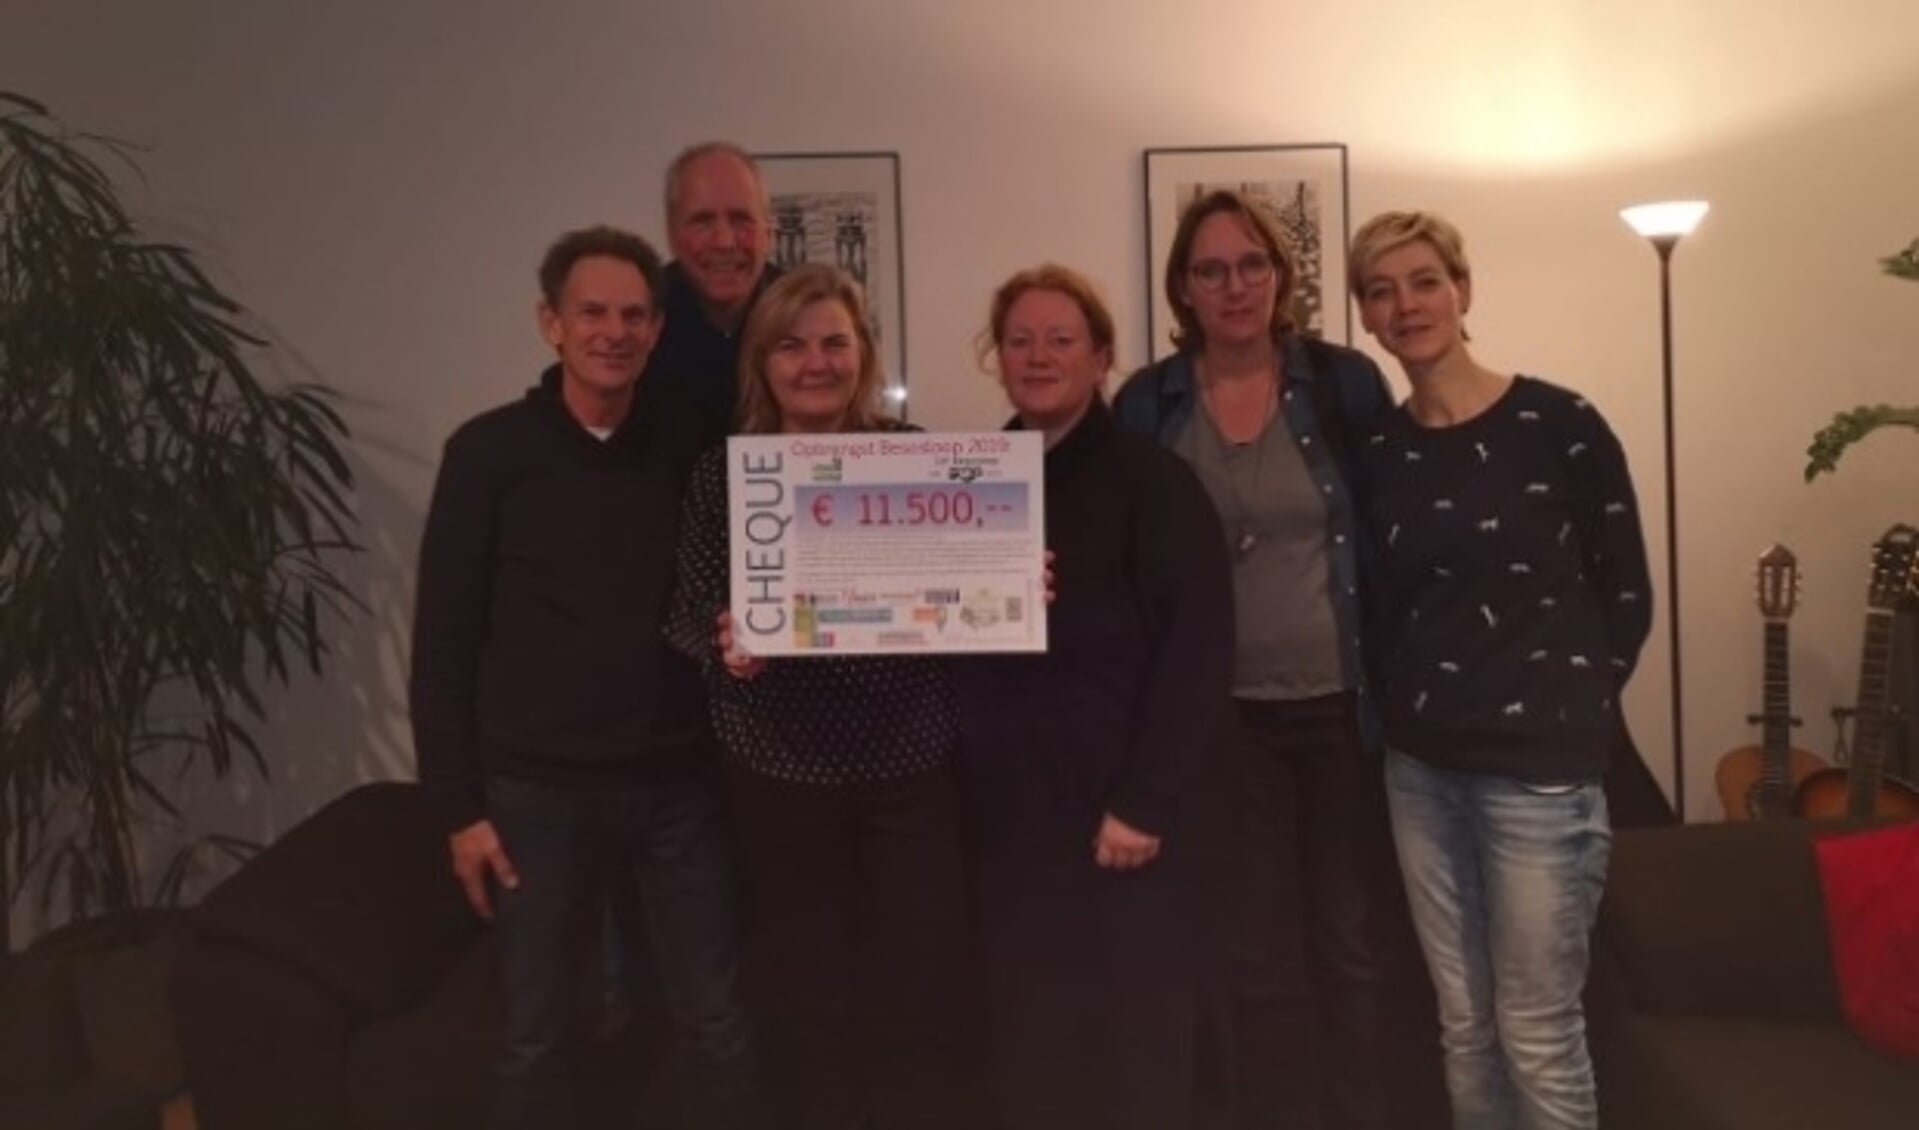 De cheque t.w.v. 11.500 euro werd overhandigd aan voorzitter Eva Nylander van de Stichting Betuwe Wereldwijd. (Foto: PR)